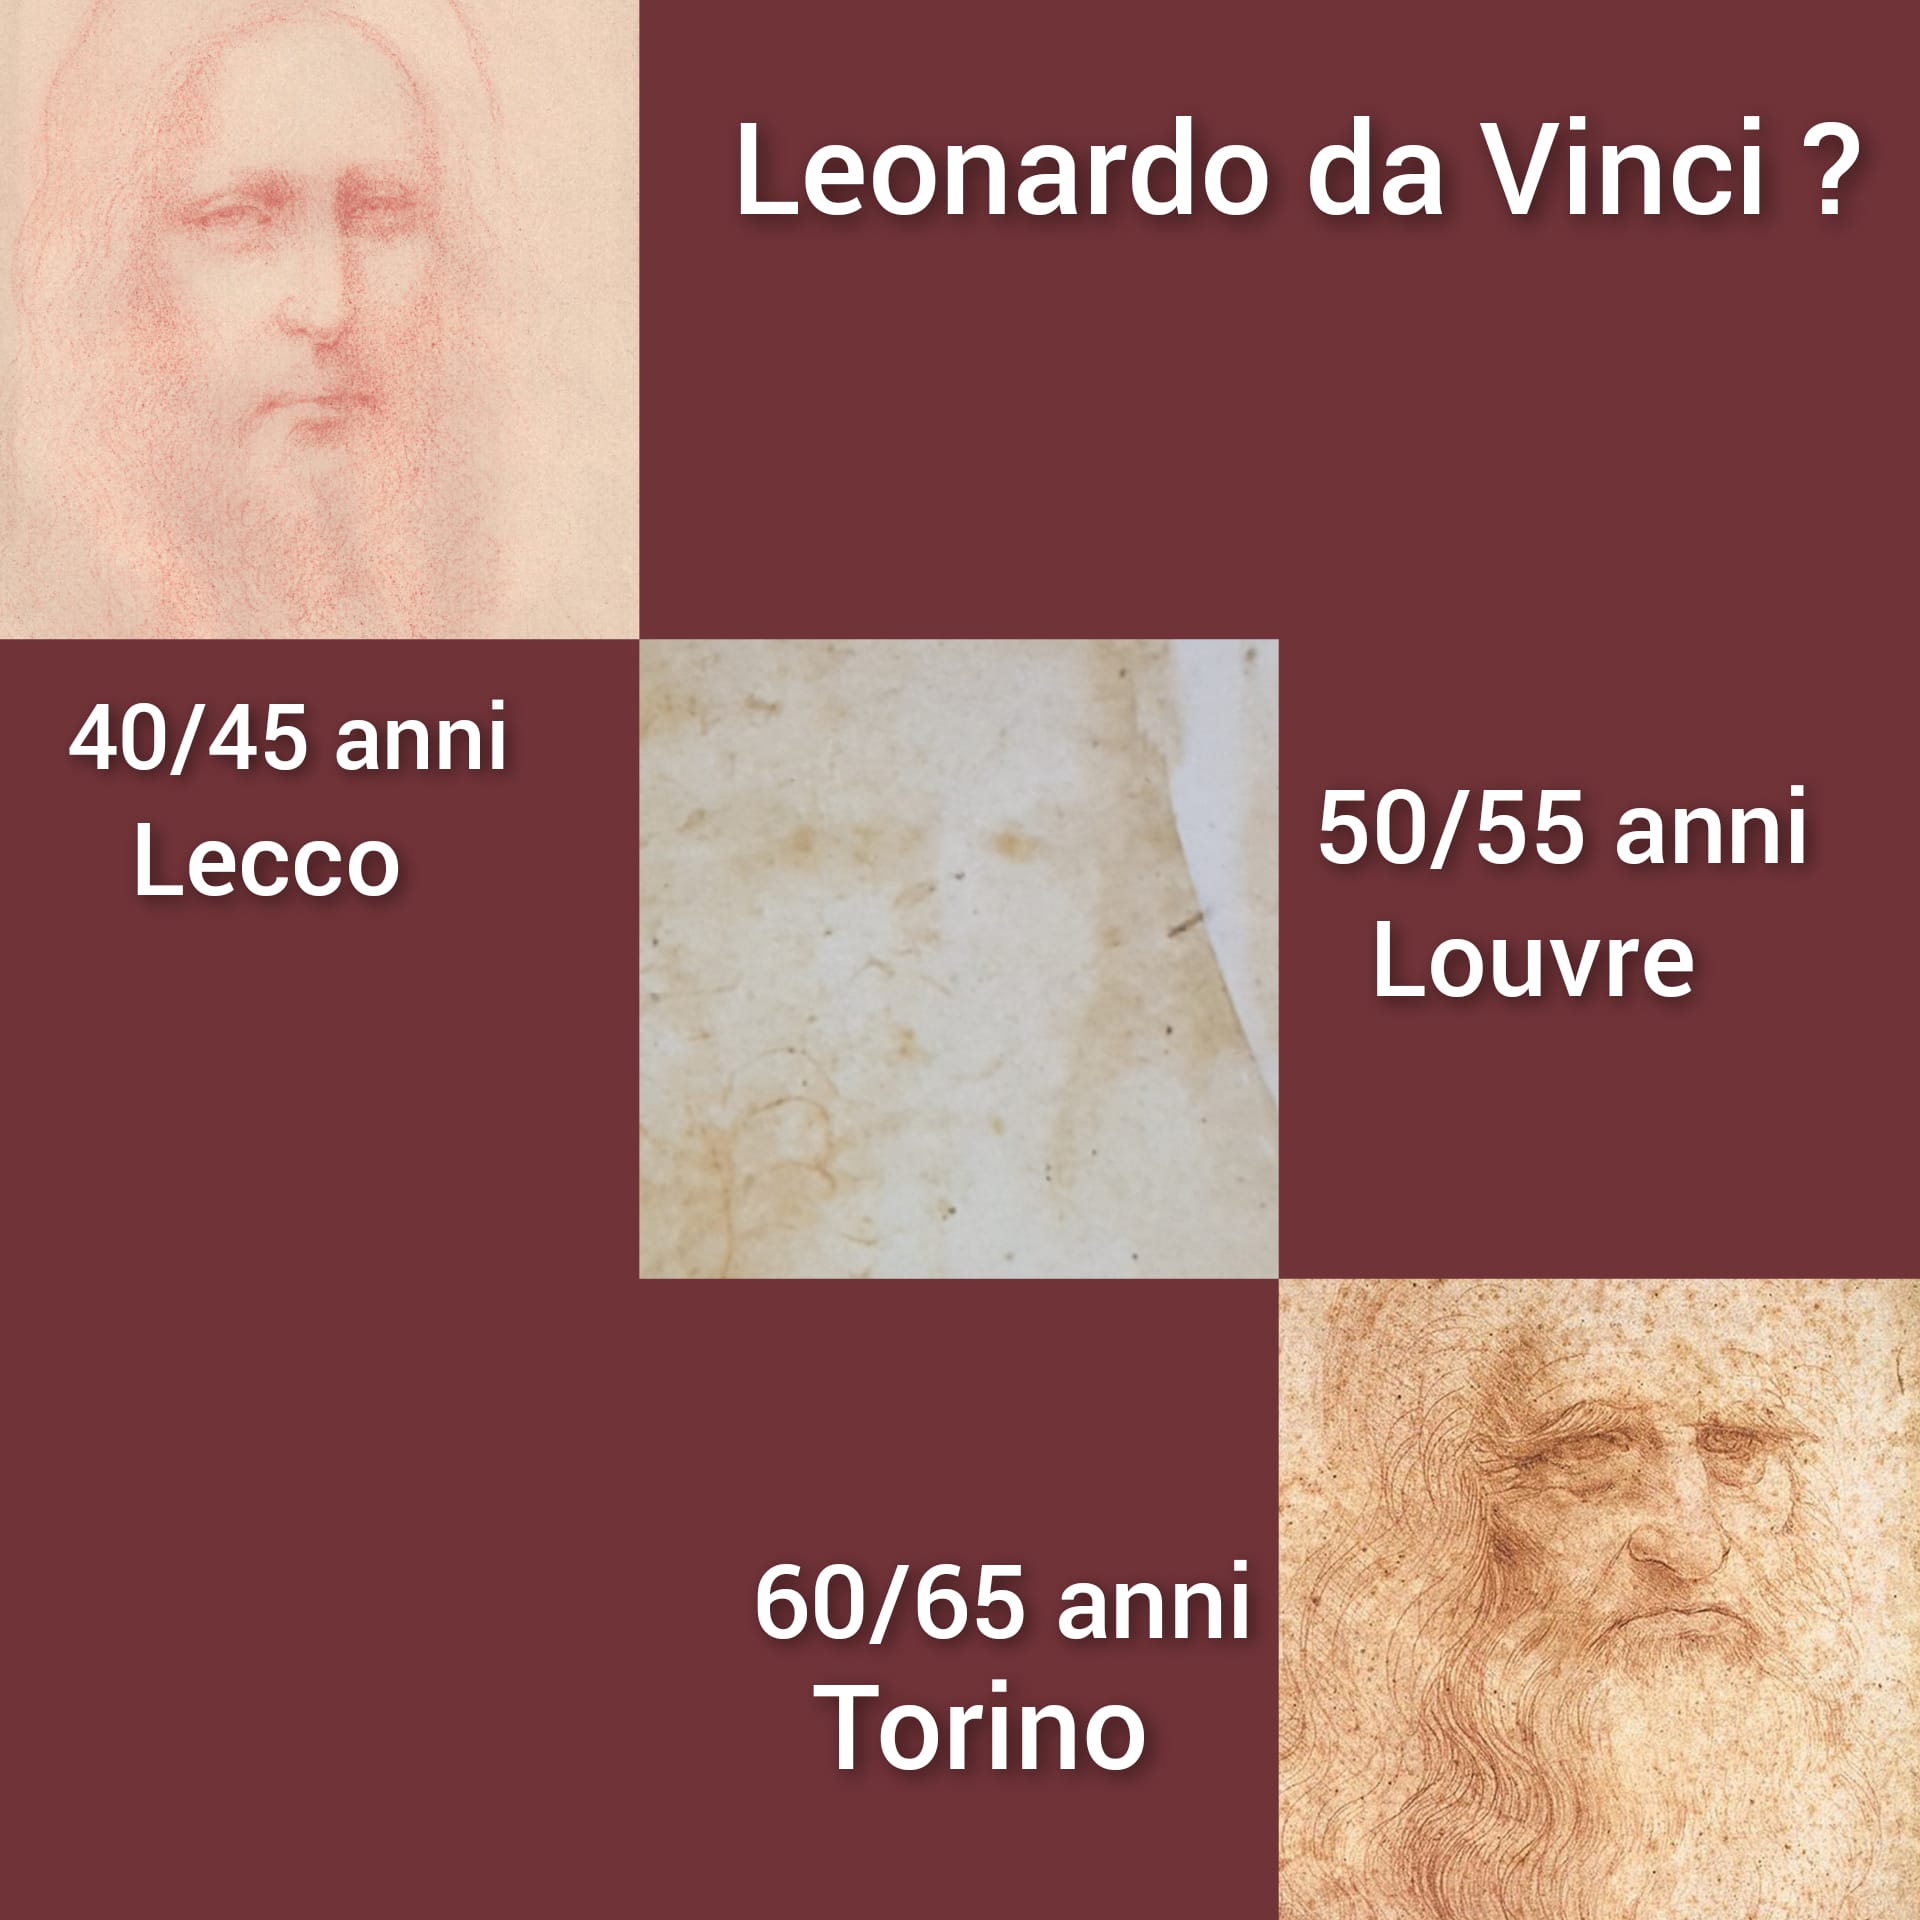 L'ipotesi del volto di Leonardo nelle differenti età